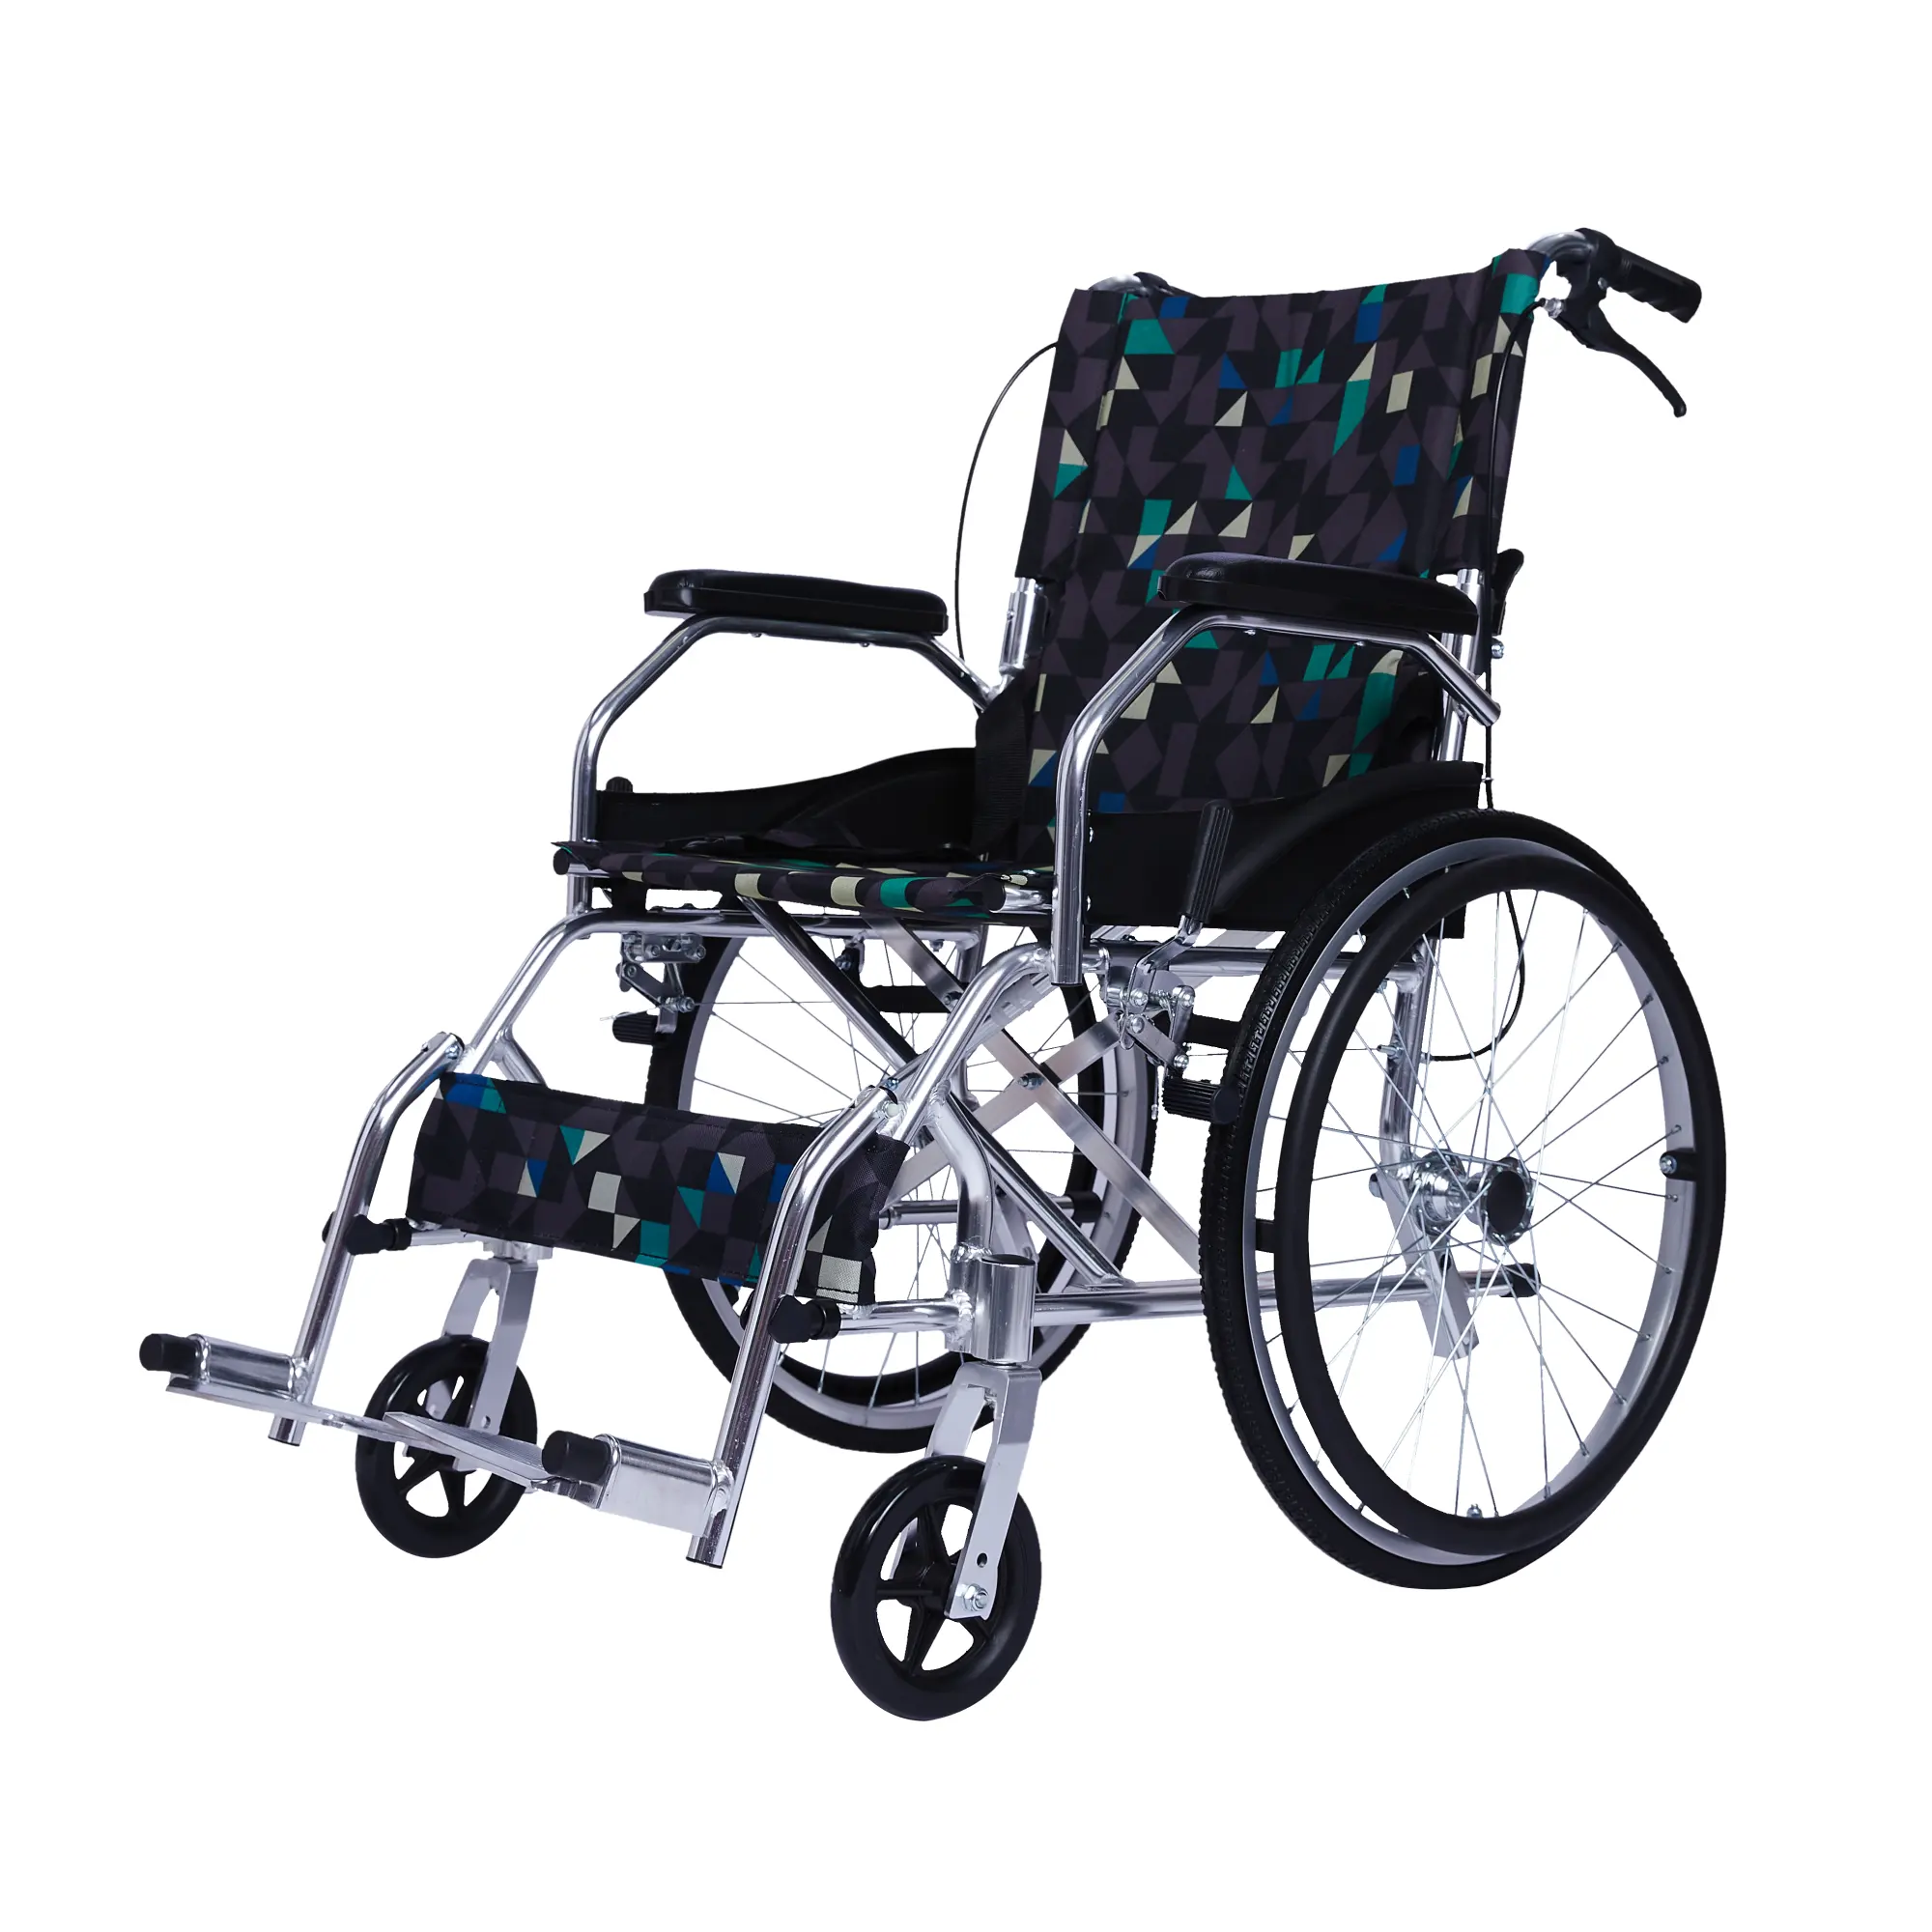 Qualità migliore struttura in alluminio leggero sedia a rotelle bracciolo fisso disabilitato Flip up legrest prezzo di fabbrica produttore all'ingrosso